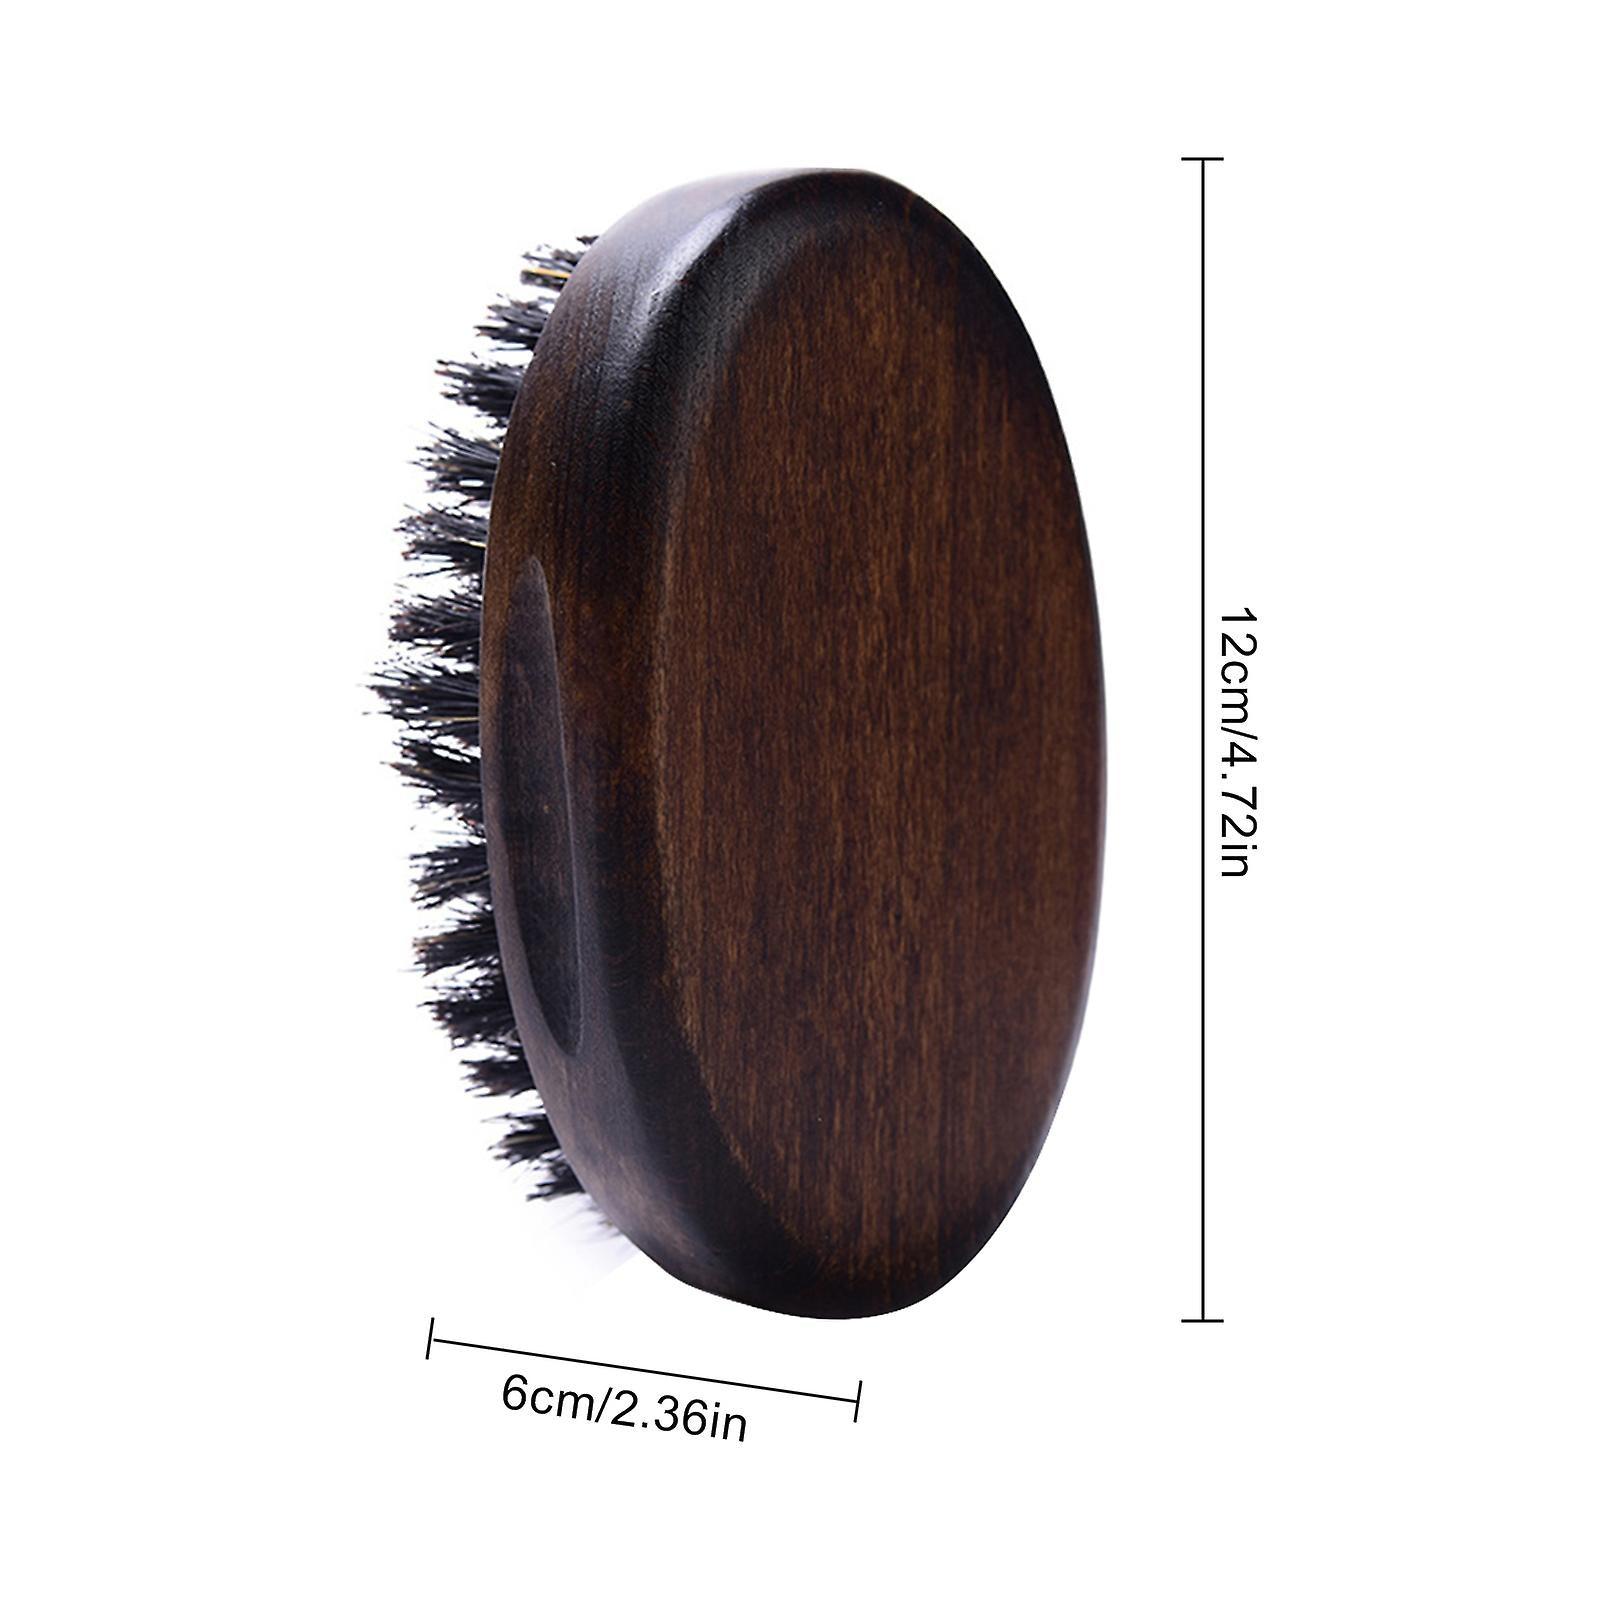 Solomon's Beard Brush Oval Light Wood | Skjeggbørste | Solomons | JK SHOP | JK Barber og herre frisør | Lavepriser | Best